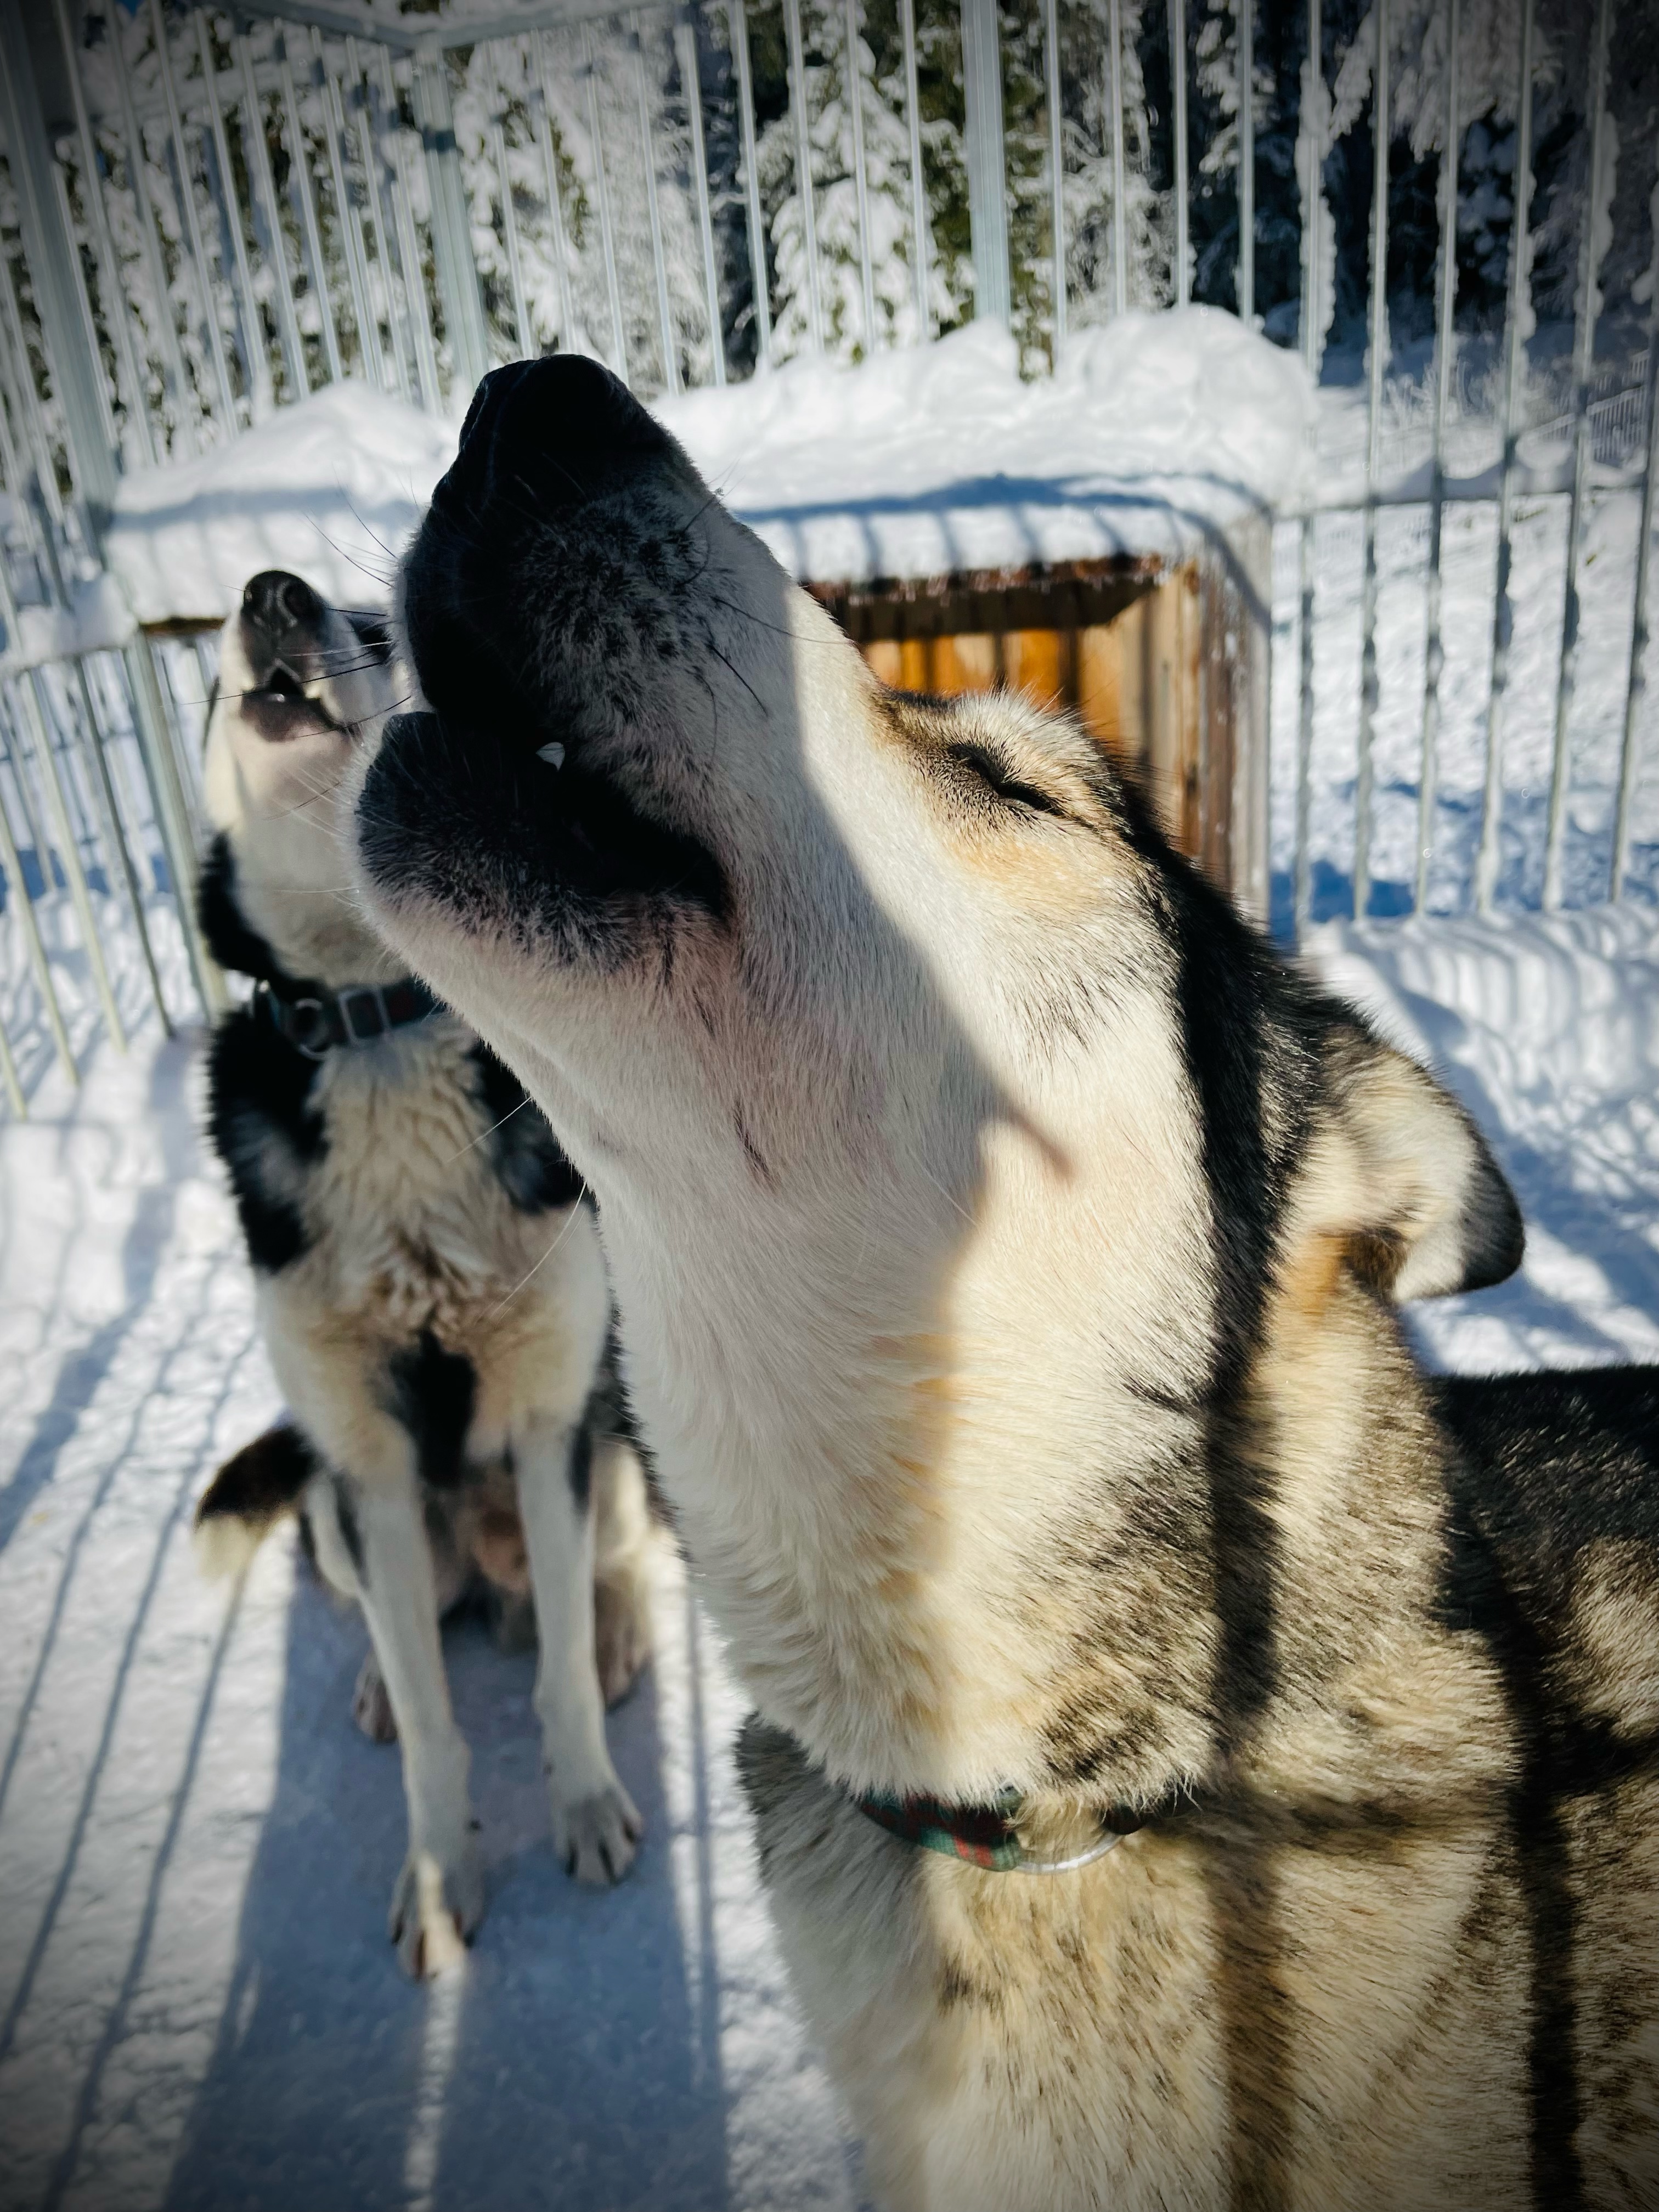 Activits hiver de la Ferme Bertrand et ses chiens des neiges : balade en traneau  chiens